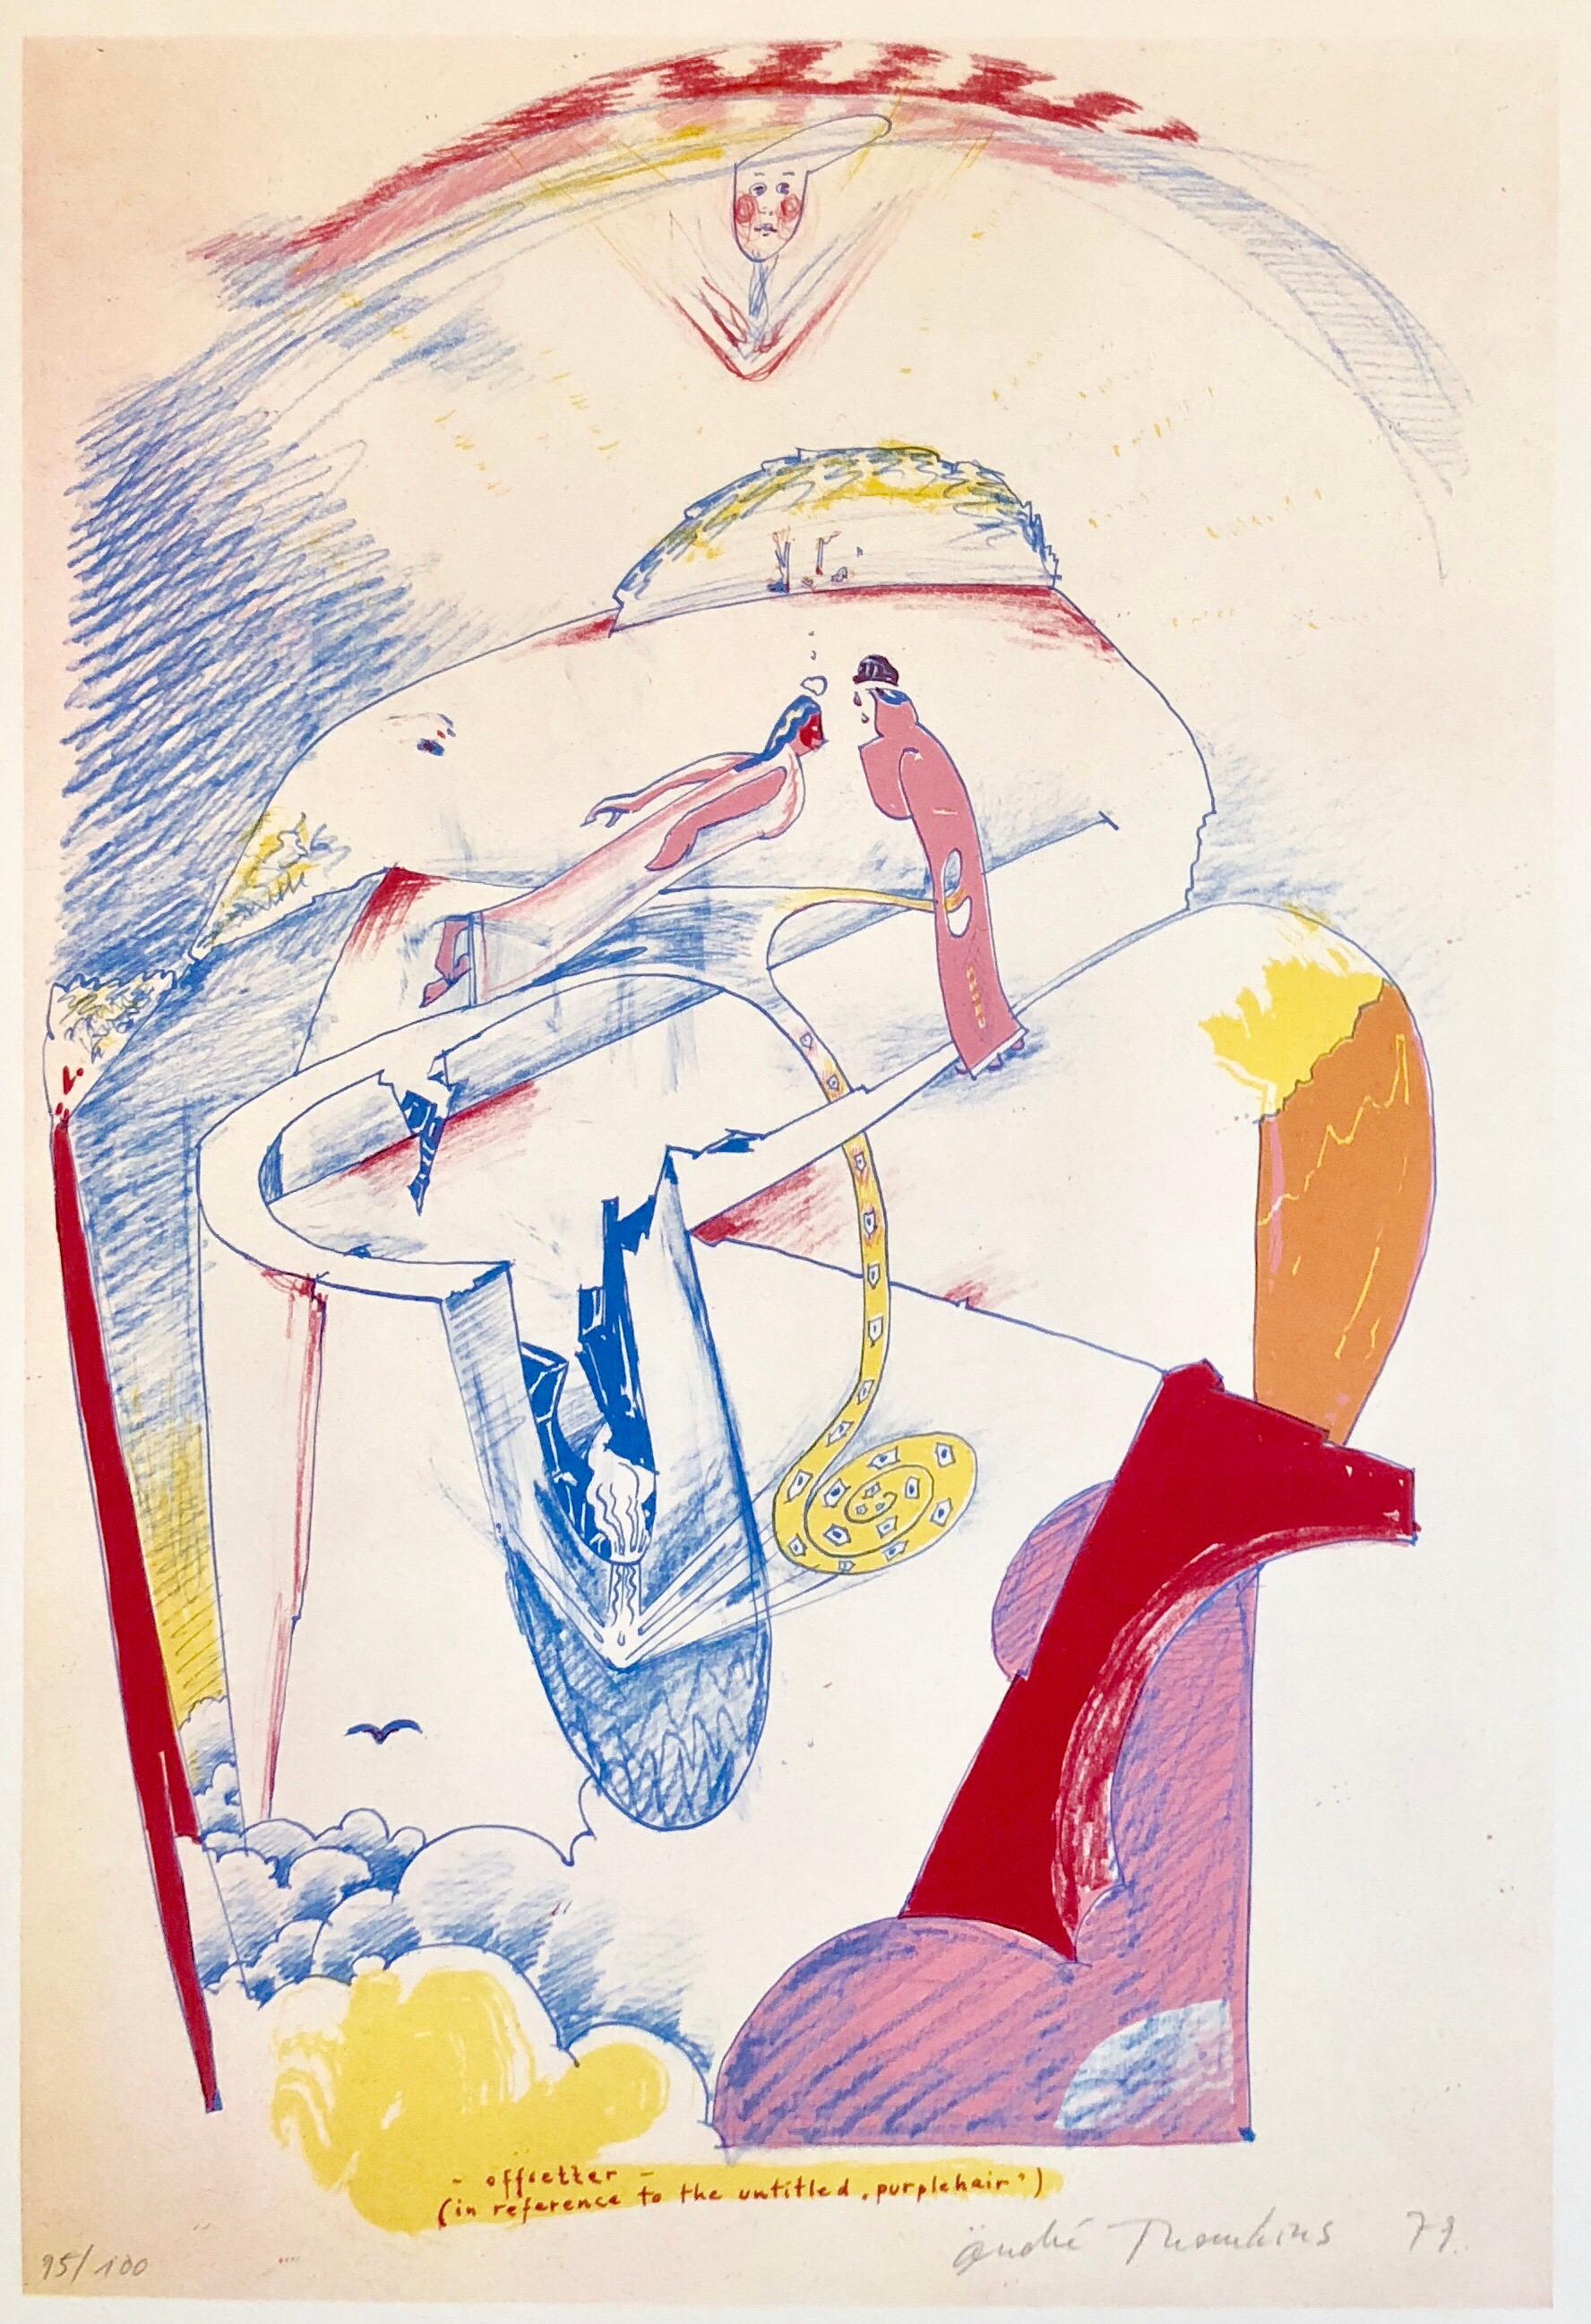 Modernistischer Schweizer farbenfroher Surrealismus der 1970er Jahre, signierte Dada-Lithographie Andre Thomkins